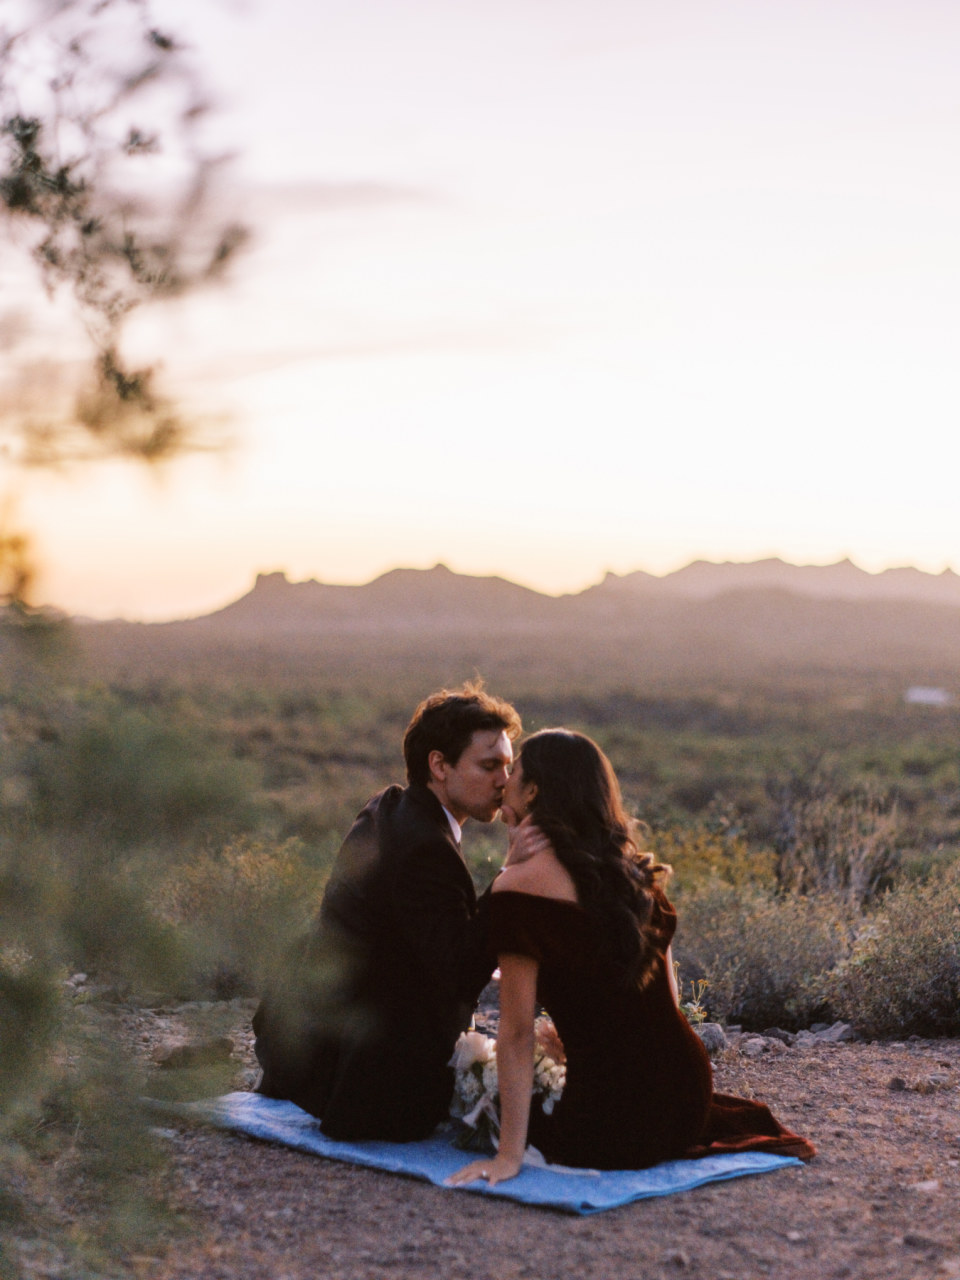 Couple sitting on blue blanket, kissing in Arizona desert landscape.